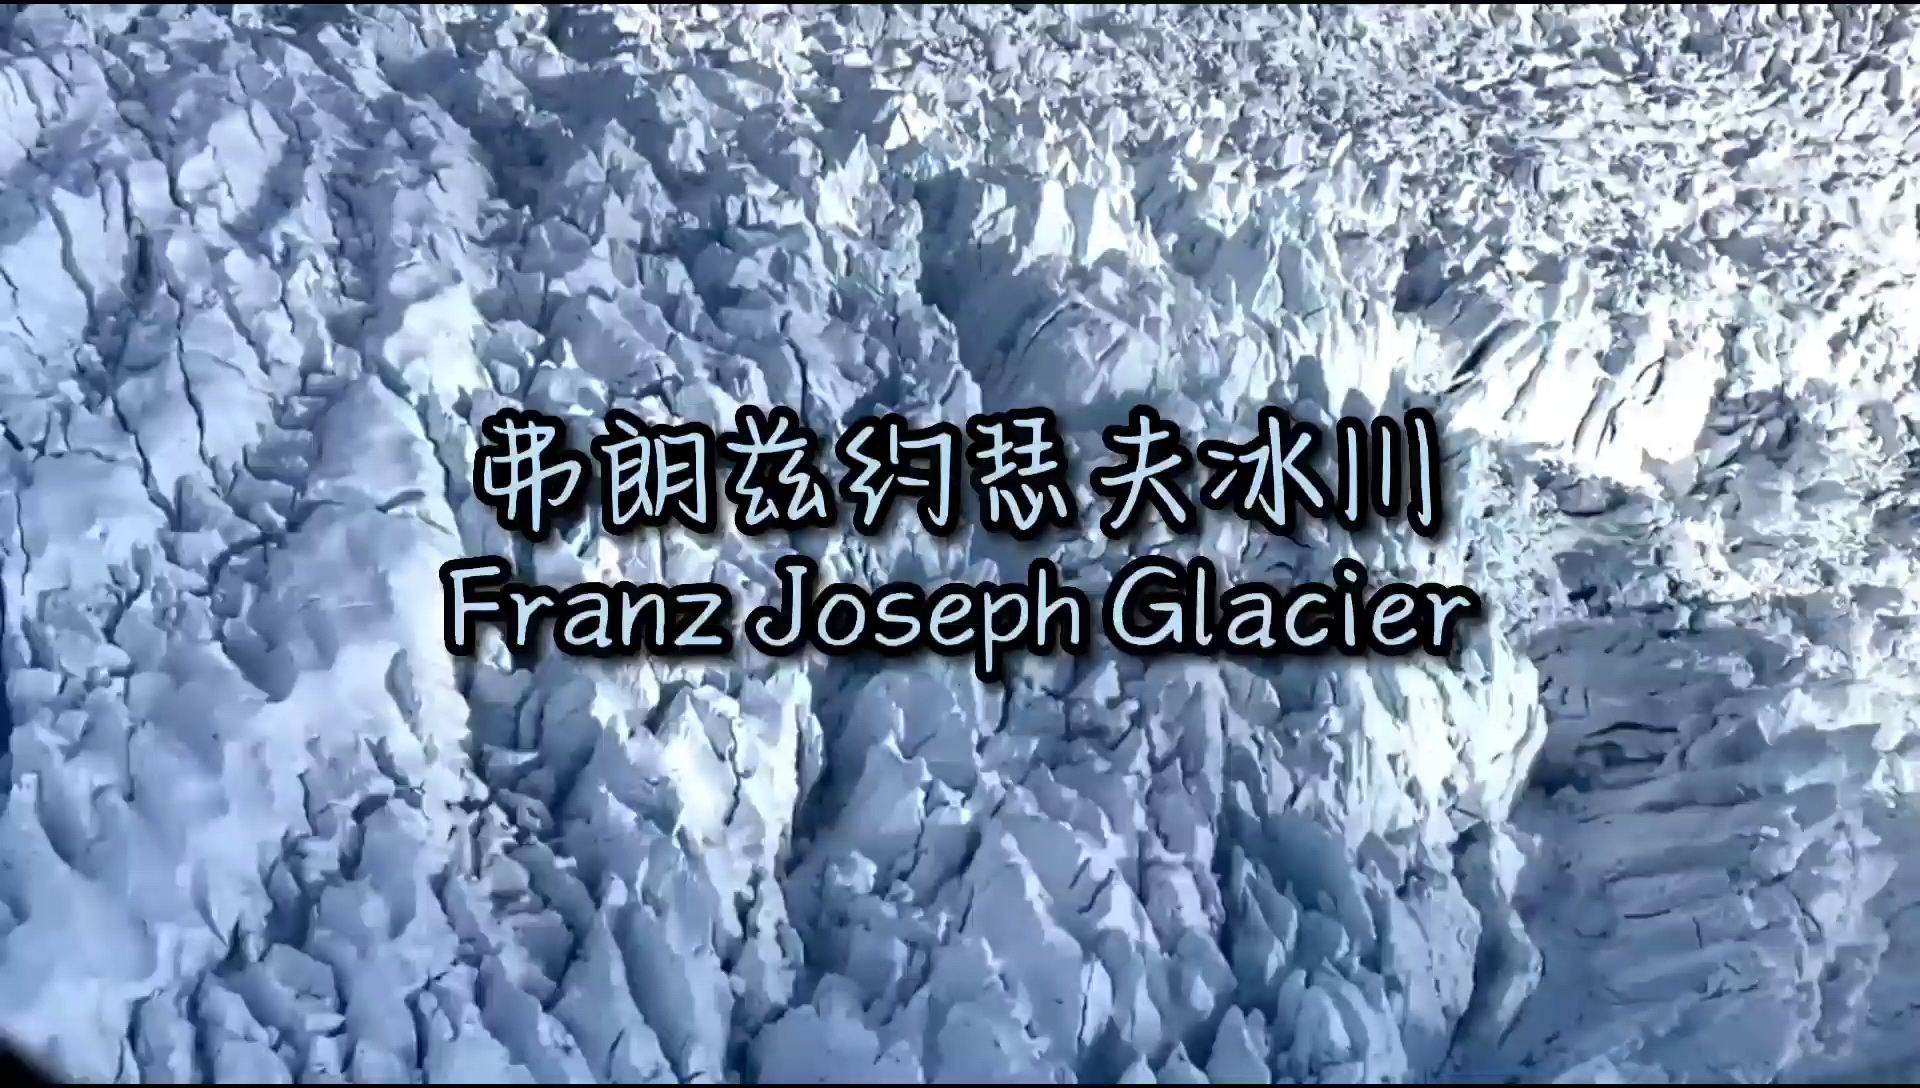 神奇的弗兰兹约瑟夫冰川